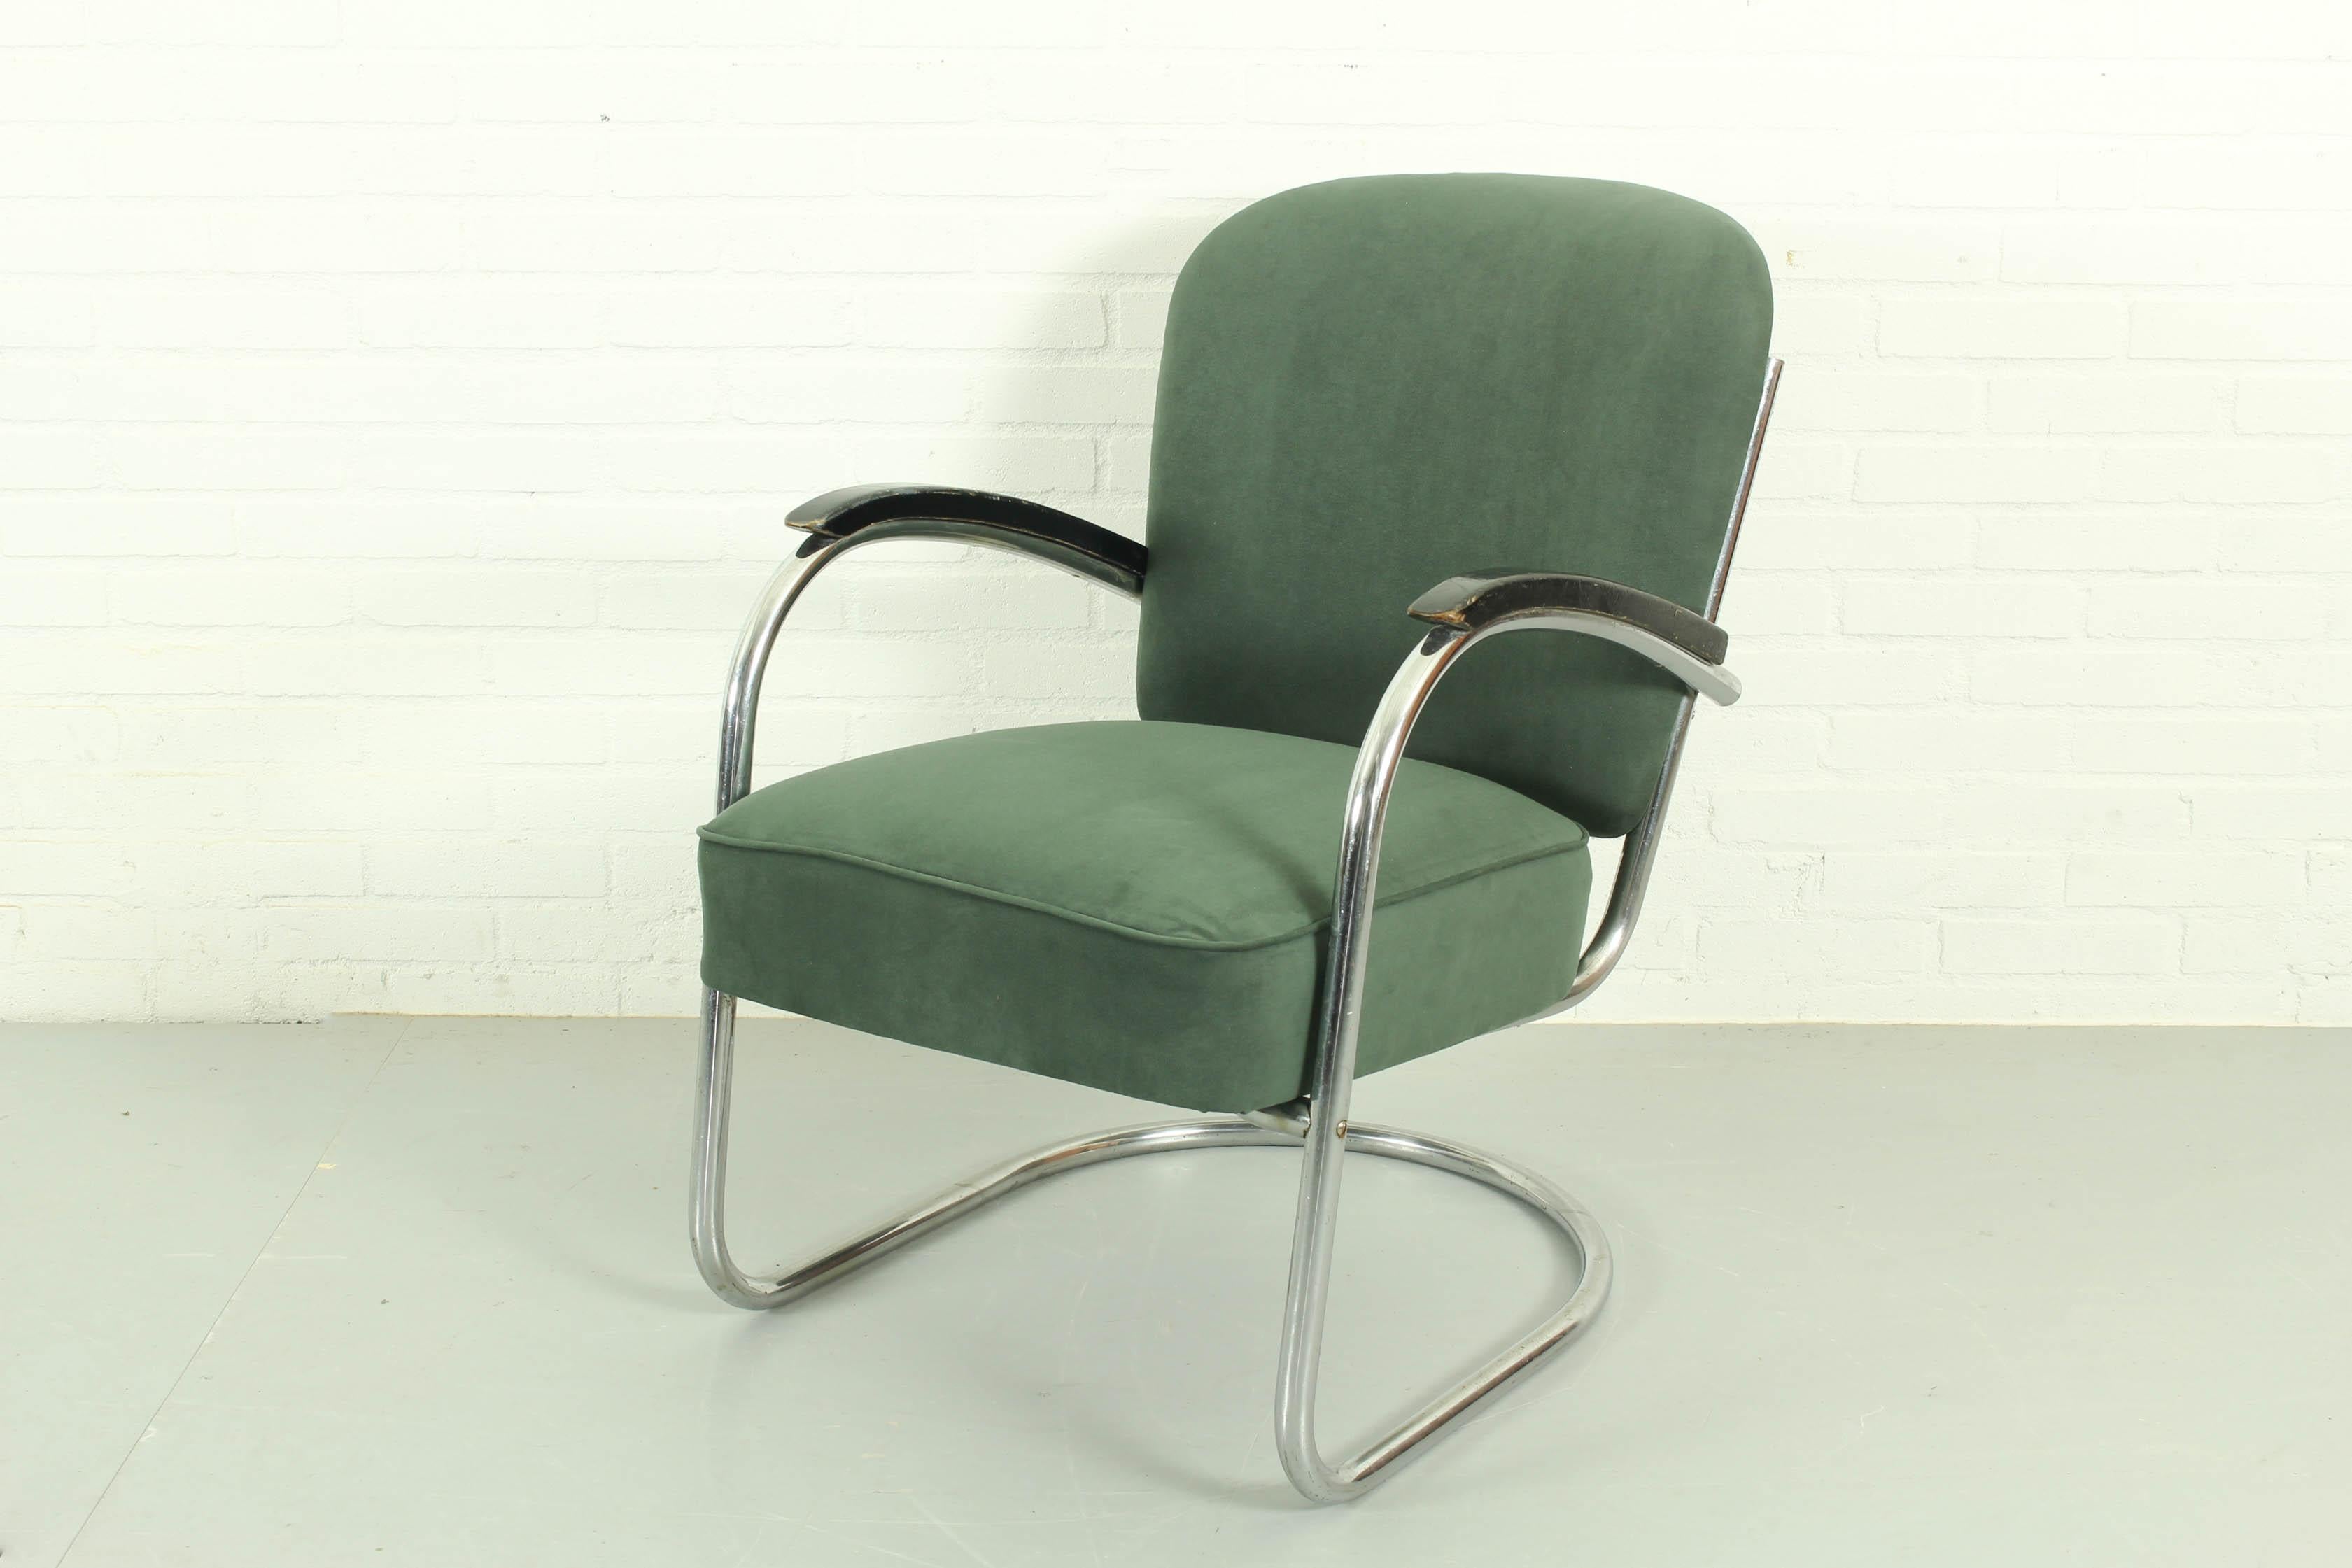 Superbe chaise longue tubulaire hollandaise conçue par Paul Schuitema dans les années 1930, 4 disponibles. Une trouvaille très rare car il s'agit de la chaise originale des années 1930. Il a été retapissé et est en très bon état. Conçu par Paul